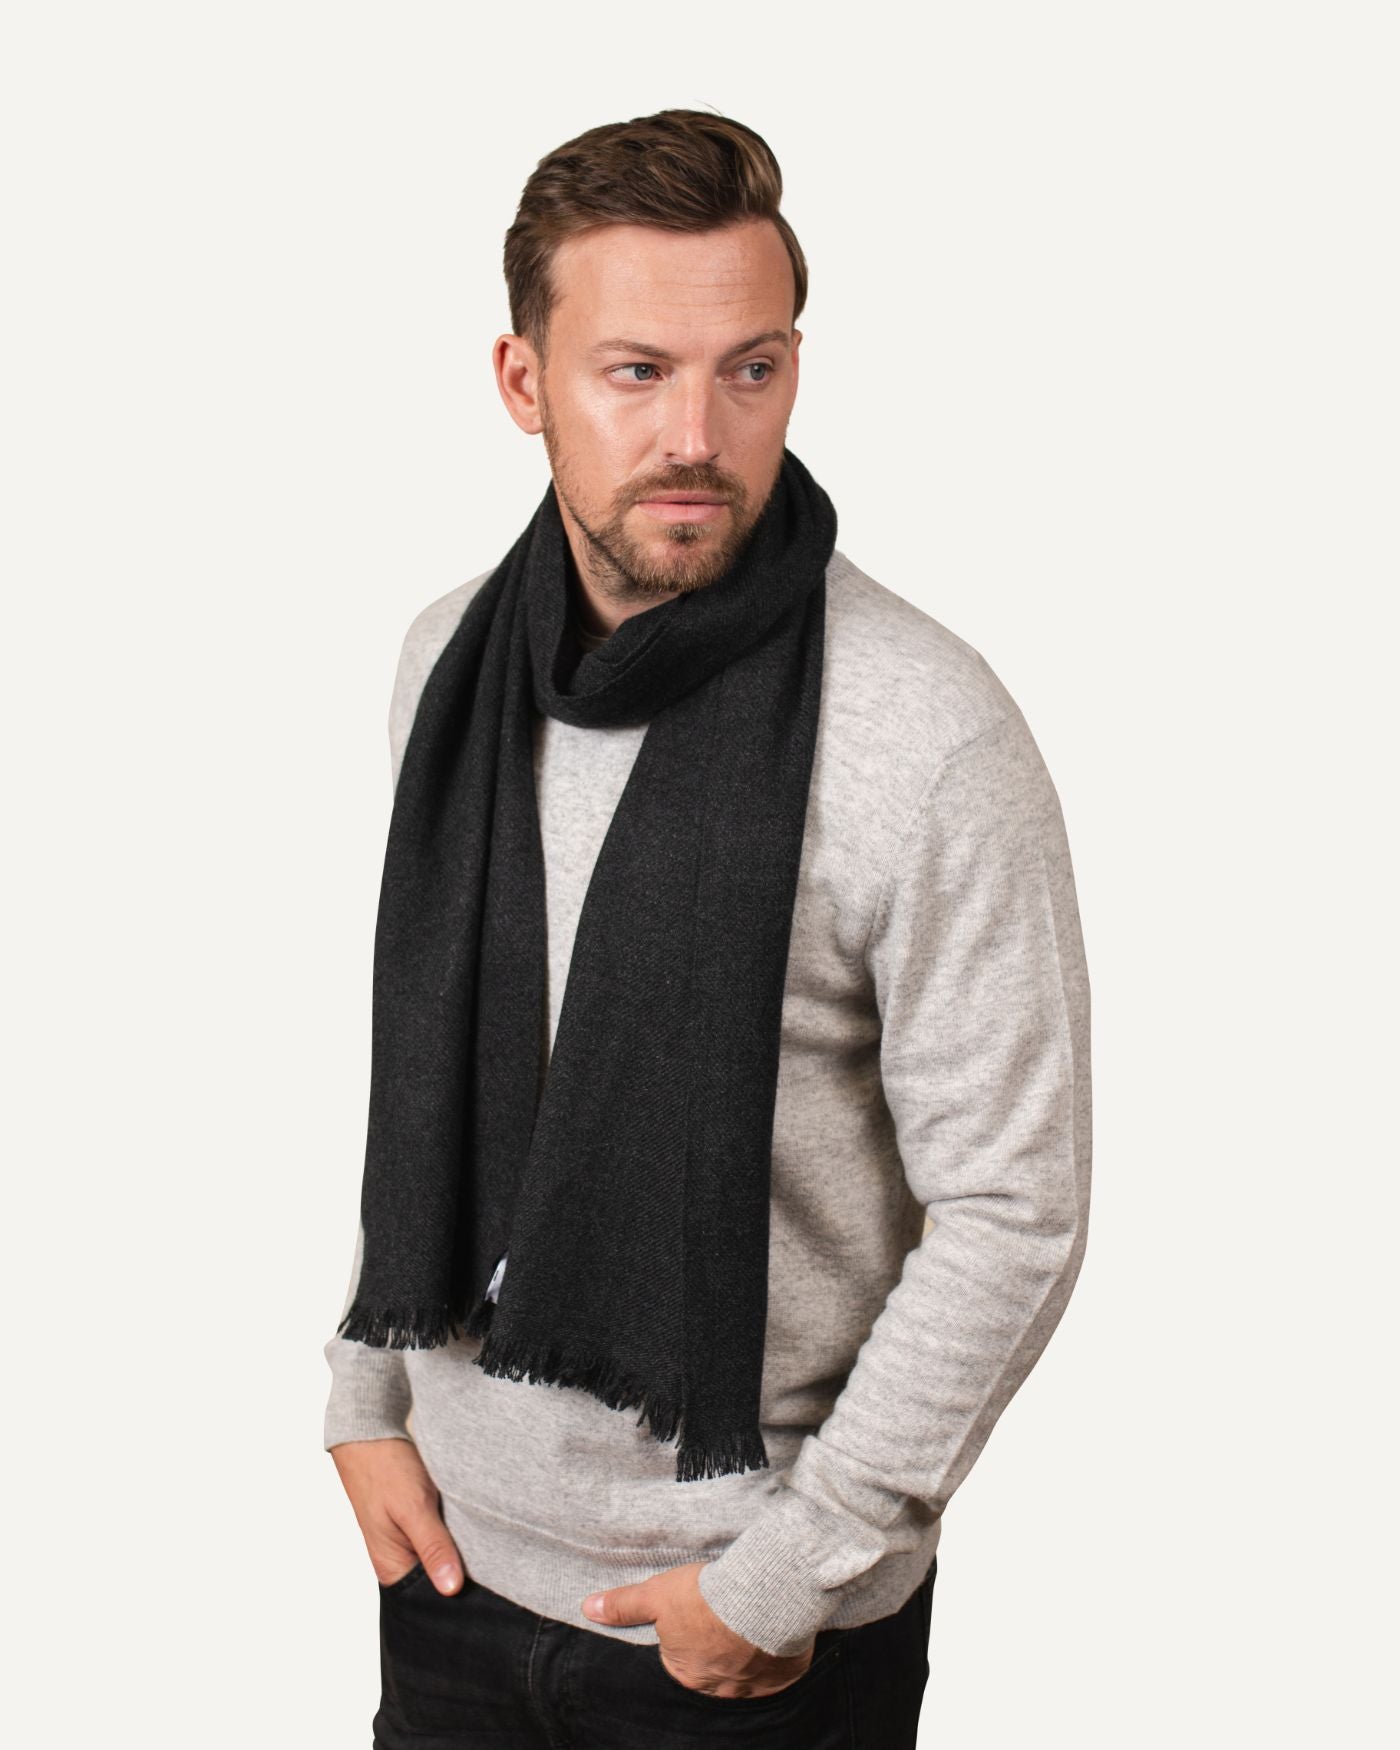 MOGLI & MARTINI | Woven cashmere scarf - men's